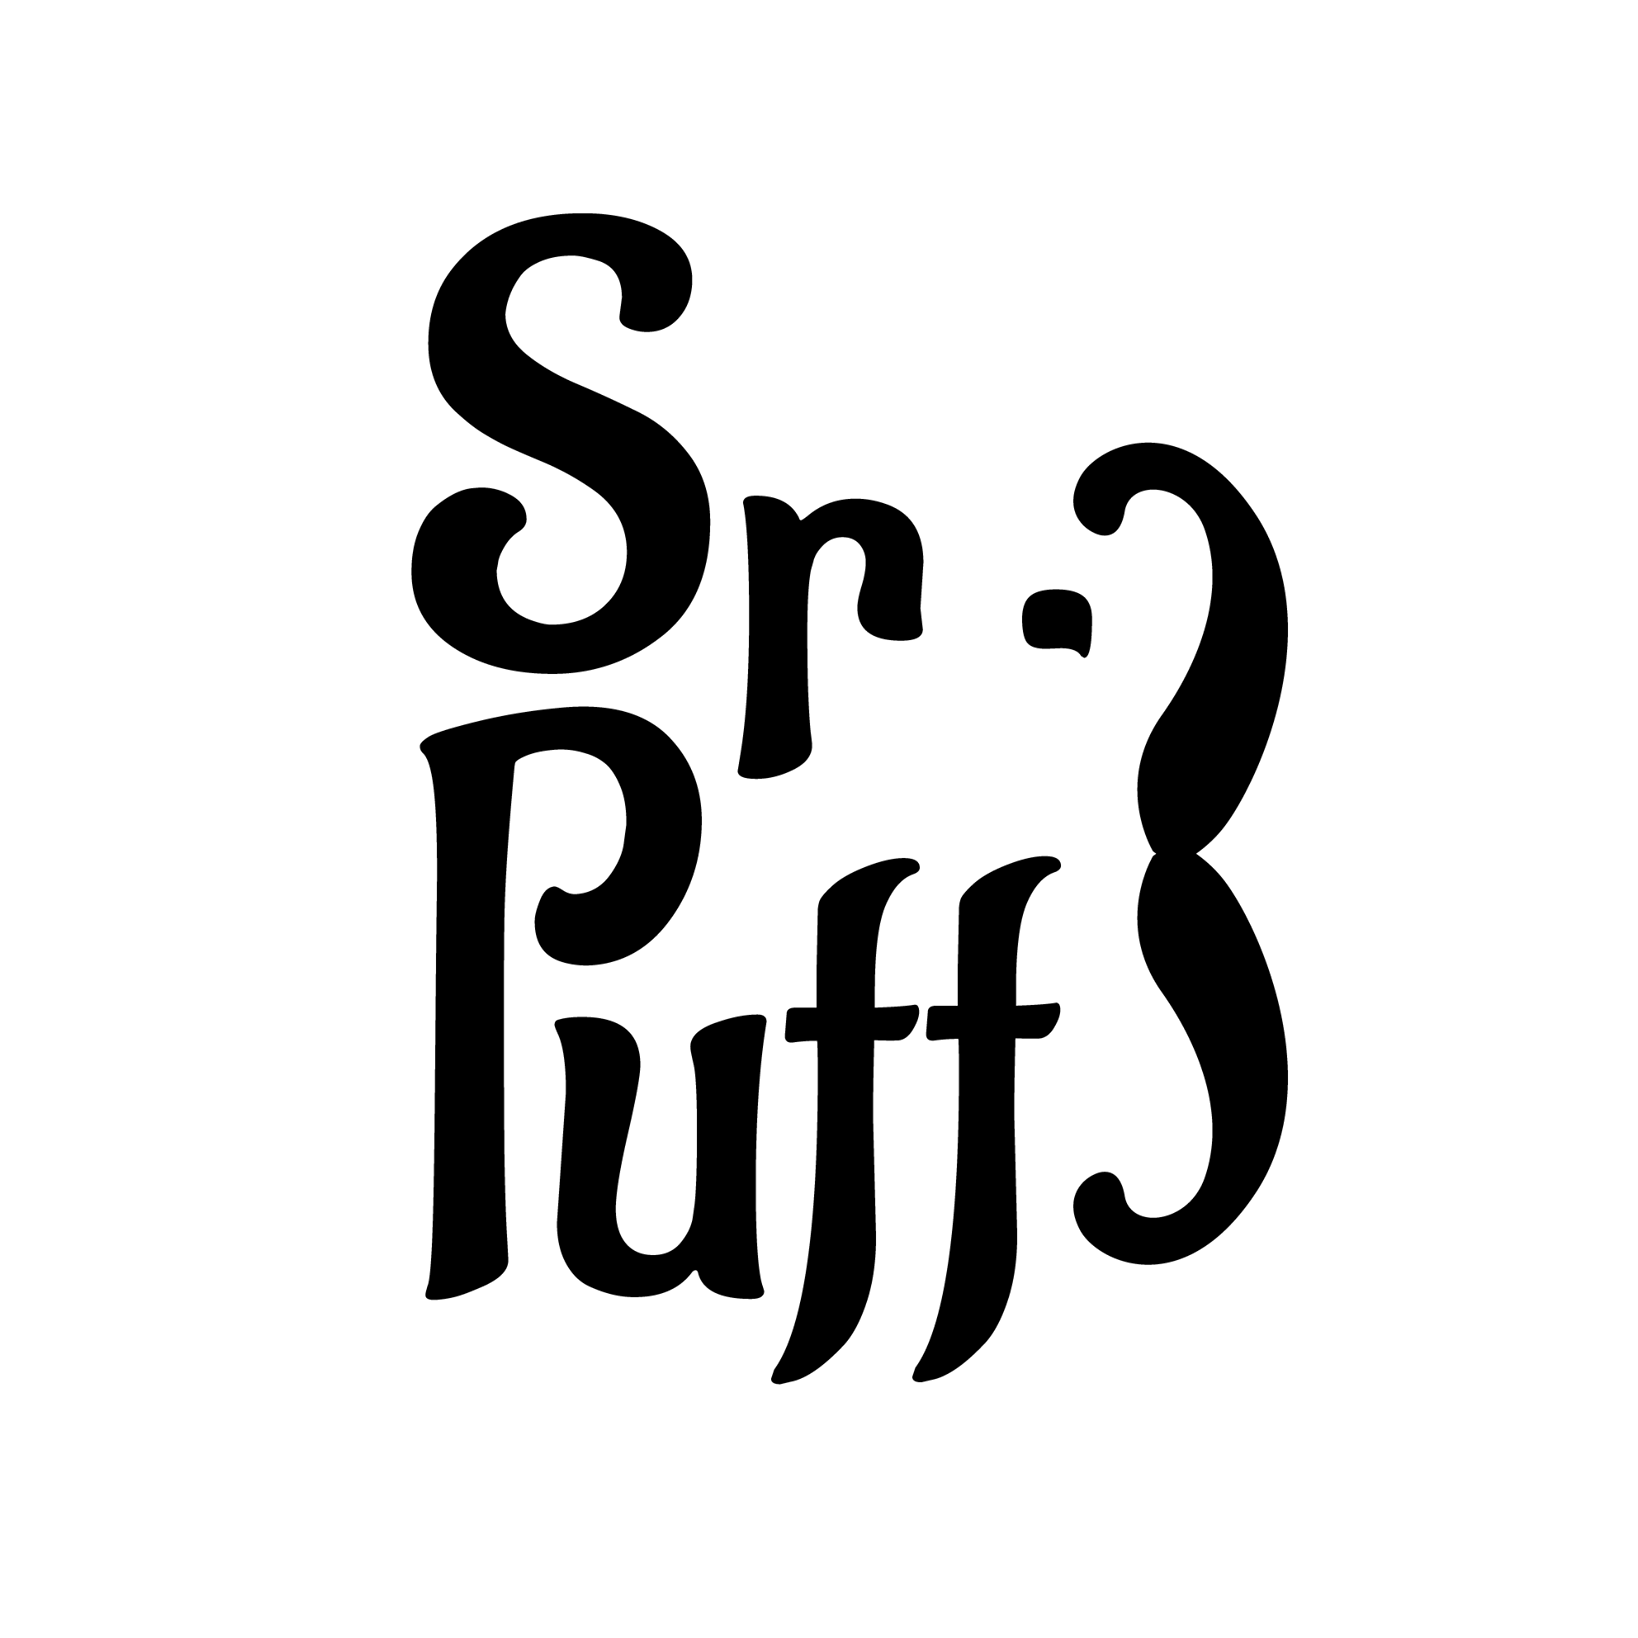 Sr. Puff – Ropa para mujer